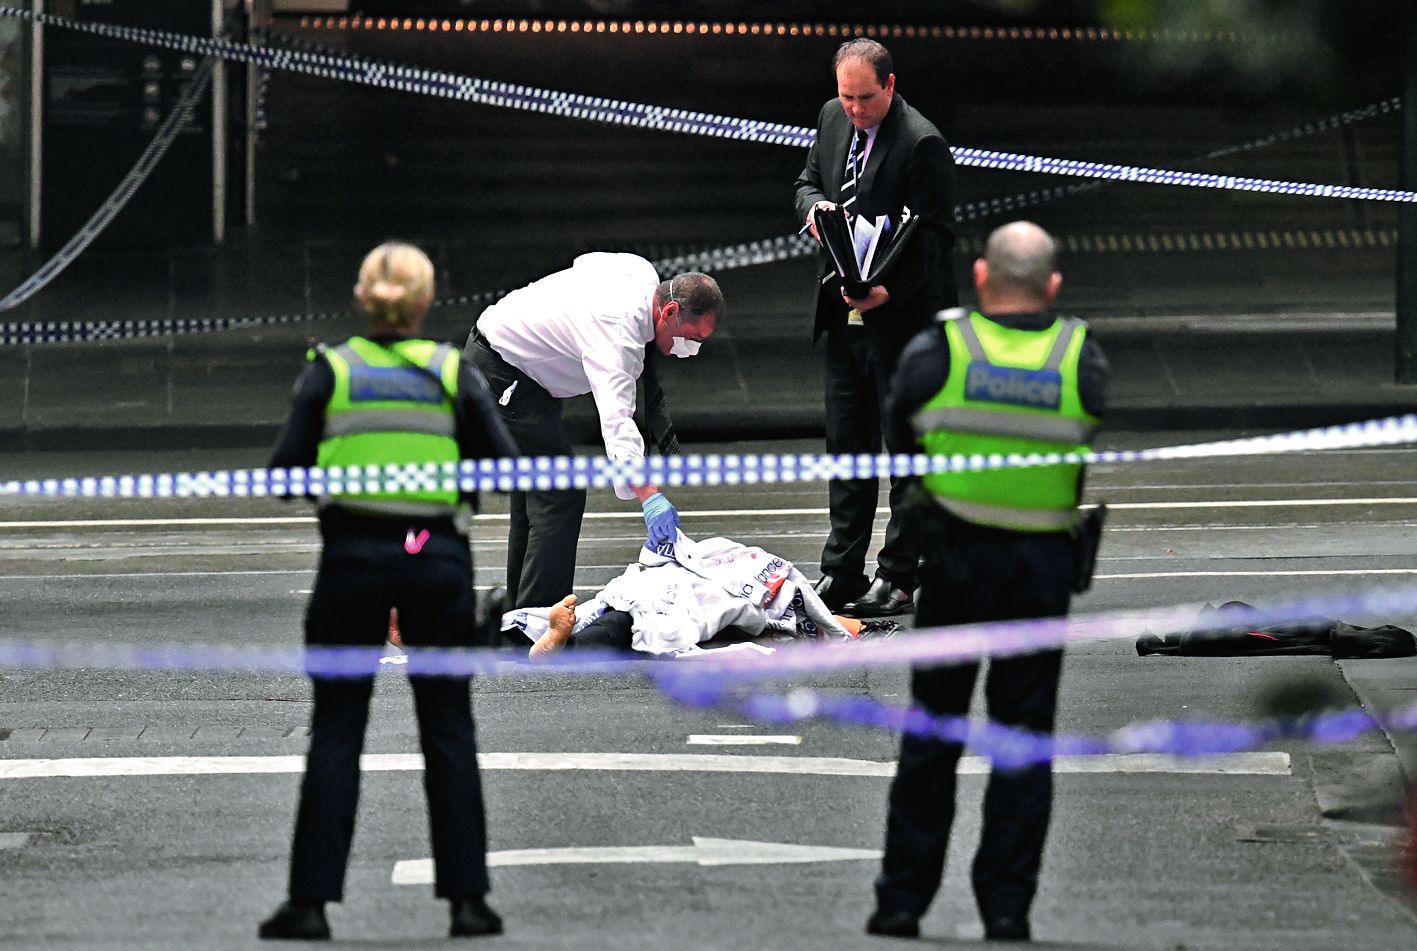 La dernière attaque remonte au 9 novembre. Depuis 2014, la police australienne a inculpé 90 personnes dans le cadre de 40 enquêtes antiterroristes.Photo AFP